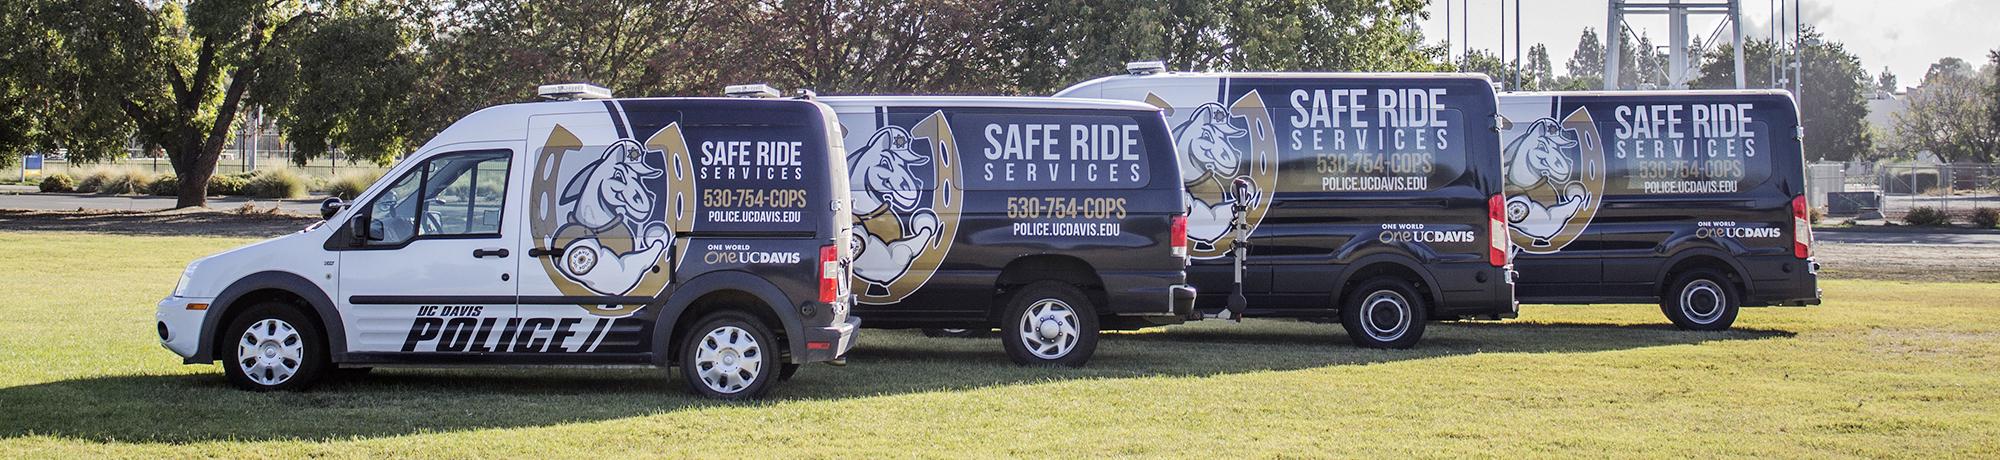 Line up of Safe Ride vans parked on campus